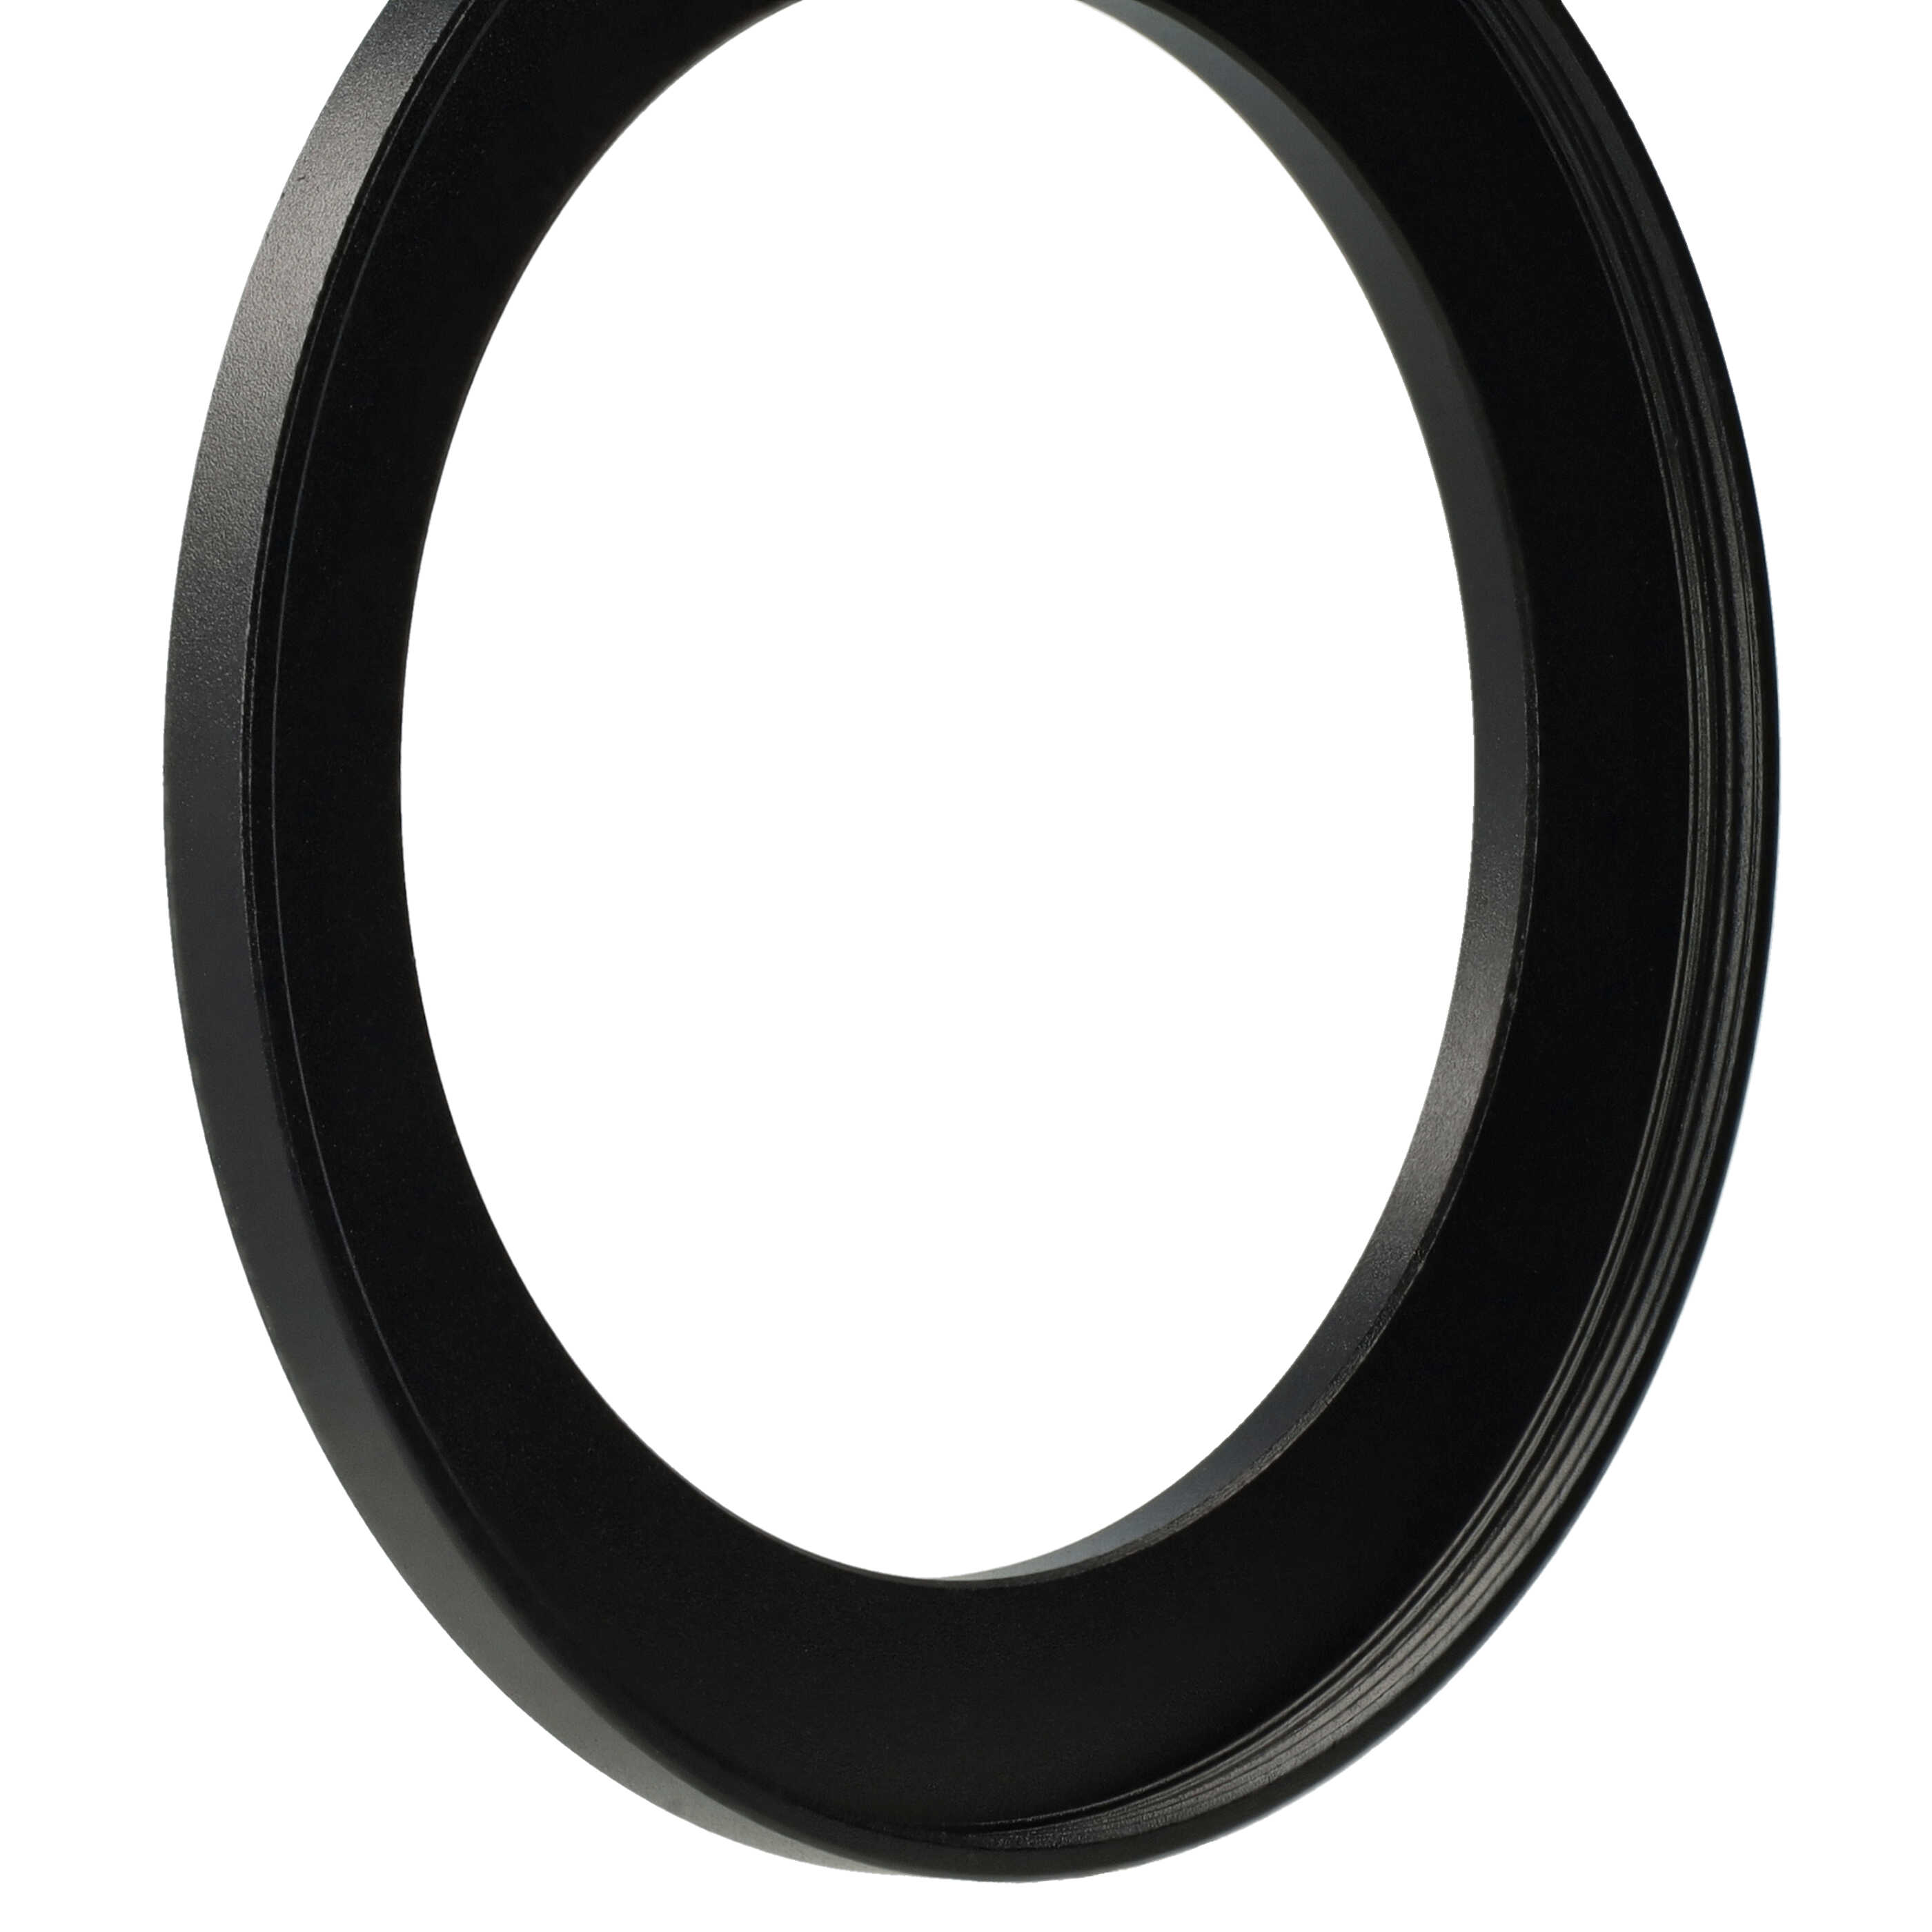 Step-Up-Ring Adapter 58 mm auf 72 mm passend für diverse Kamera-Objektive - Filteradapter